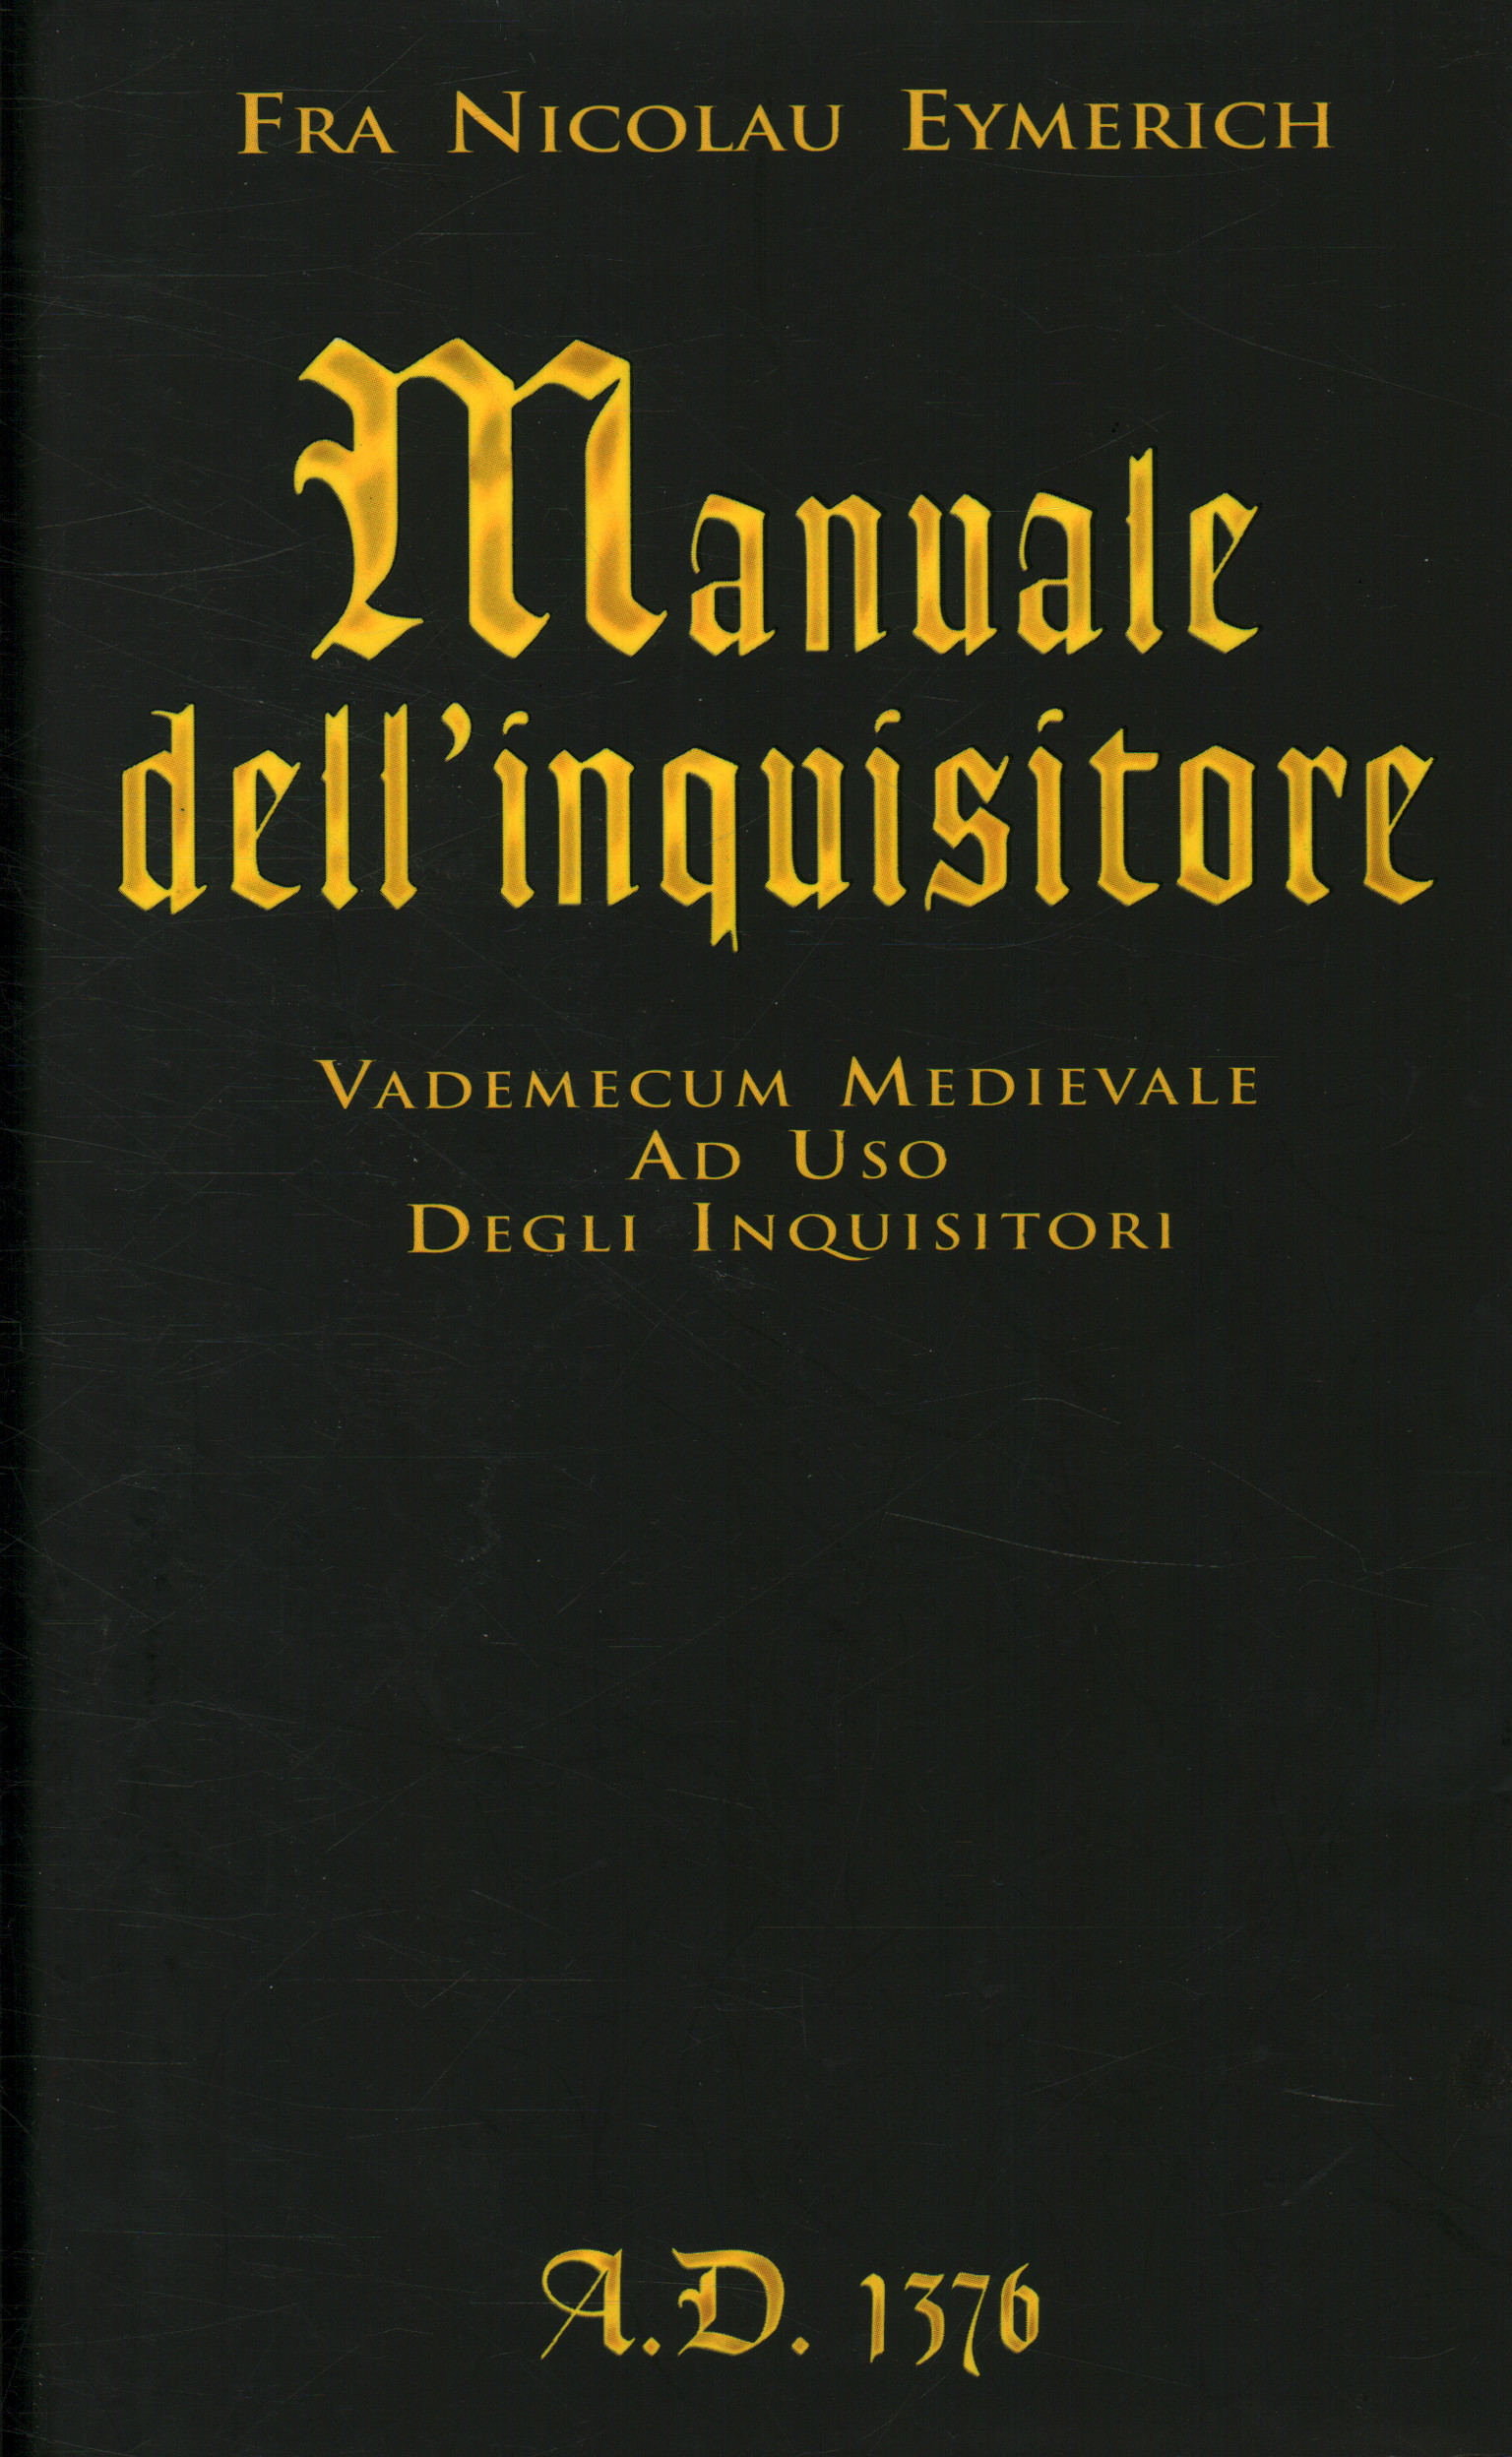 Manuale dell'inquisitore A.D. 137